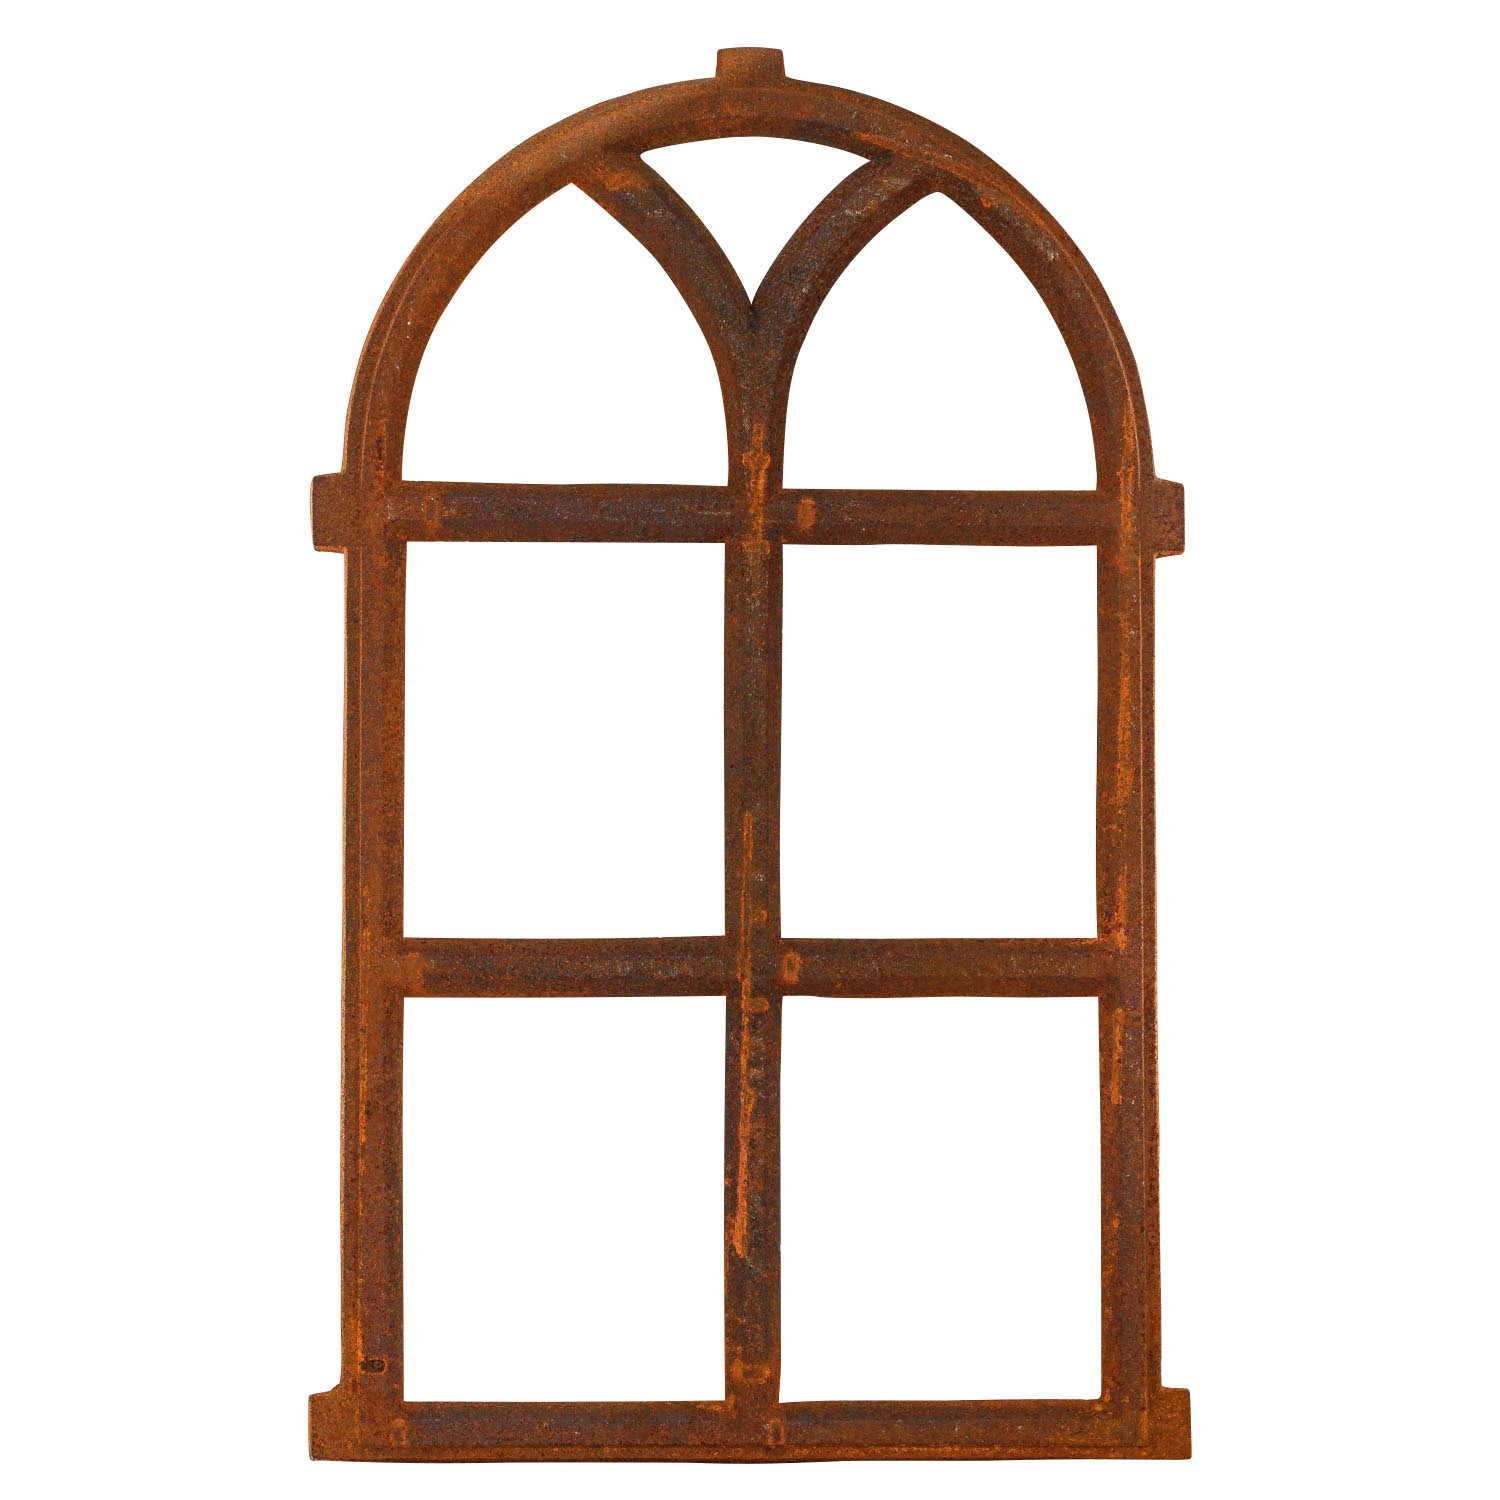 Stichbogen Stallfenster Fenster aus Eisen ländlich Eisenfenster antik NEU 